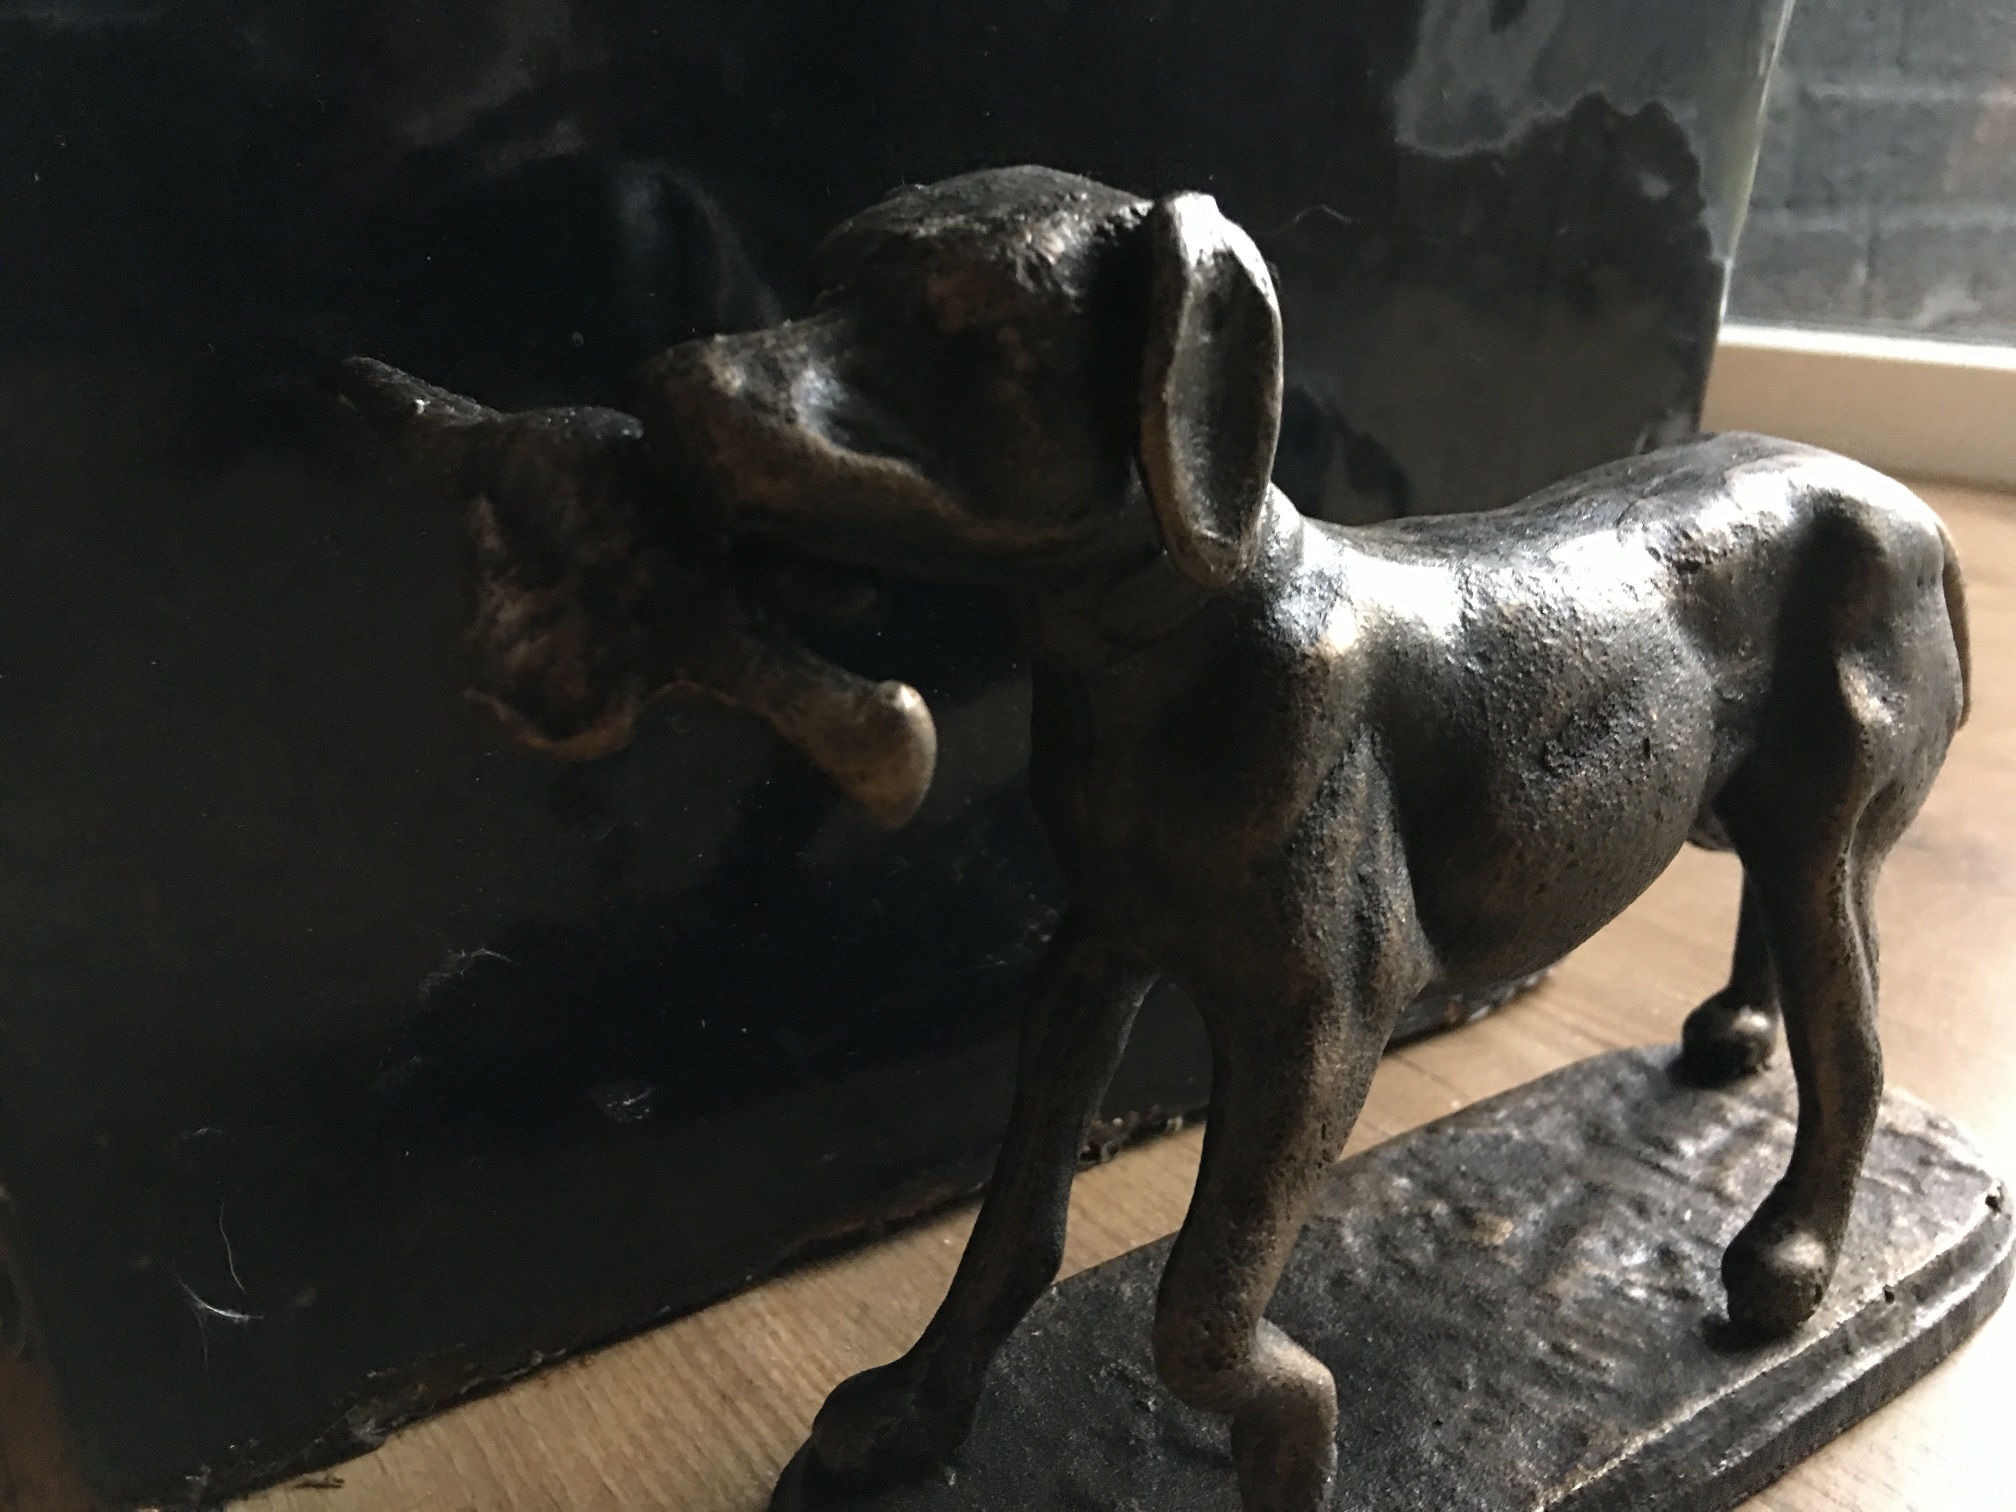 Jachthond met prooi in brons-metaal-look.